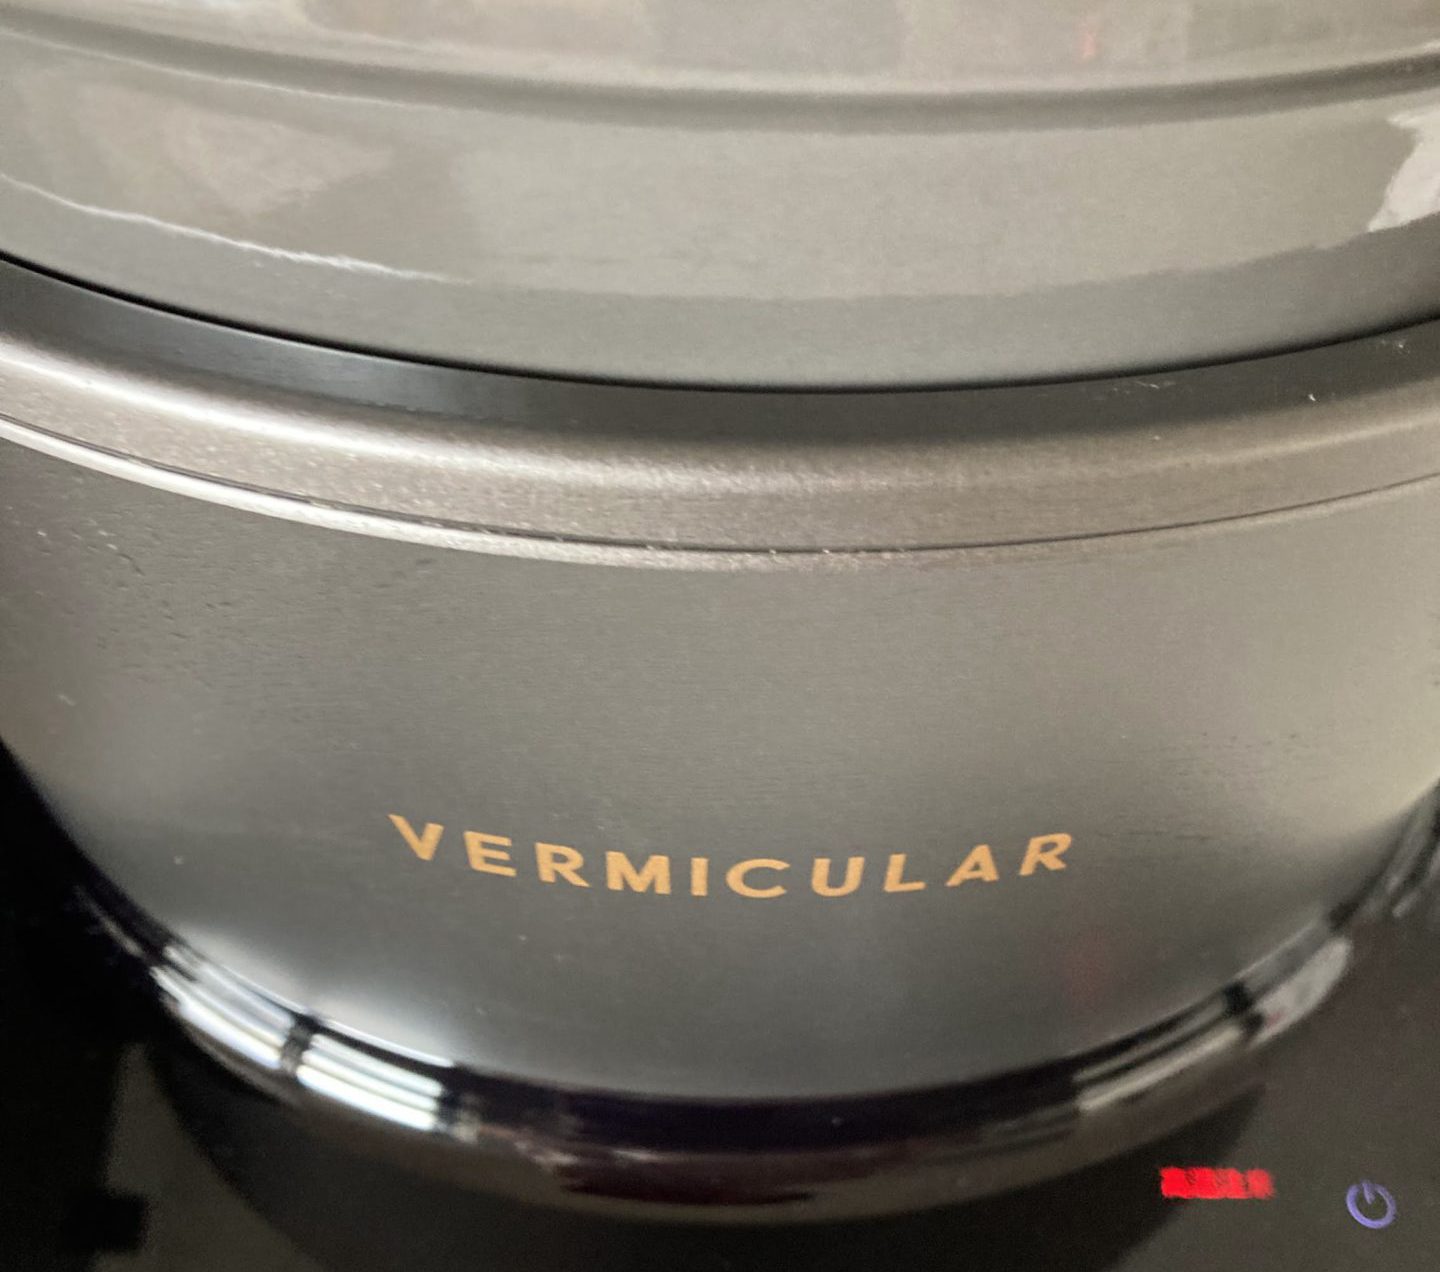 Vermicular】バーミキュラ ライスポットが壊れたときの対処法 | PAPA BLOG.